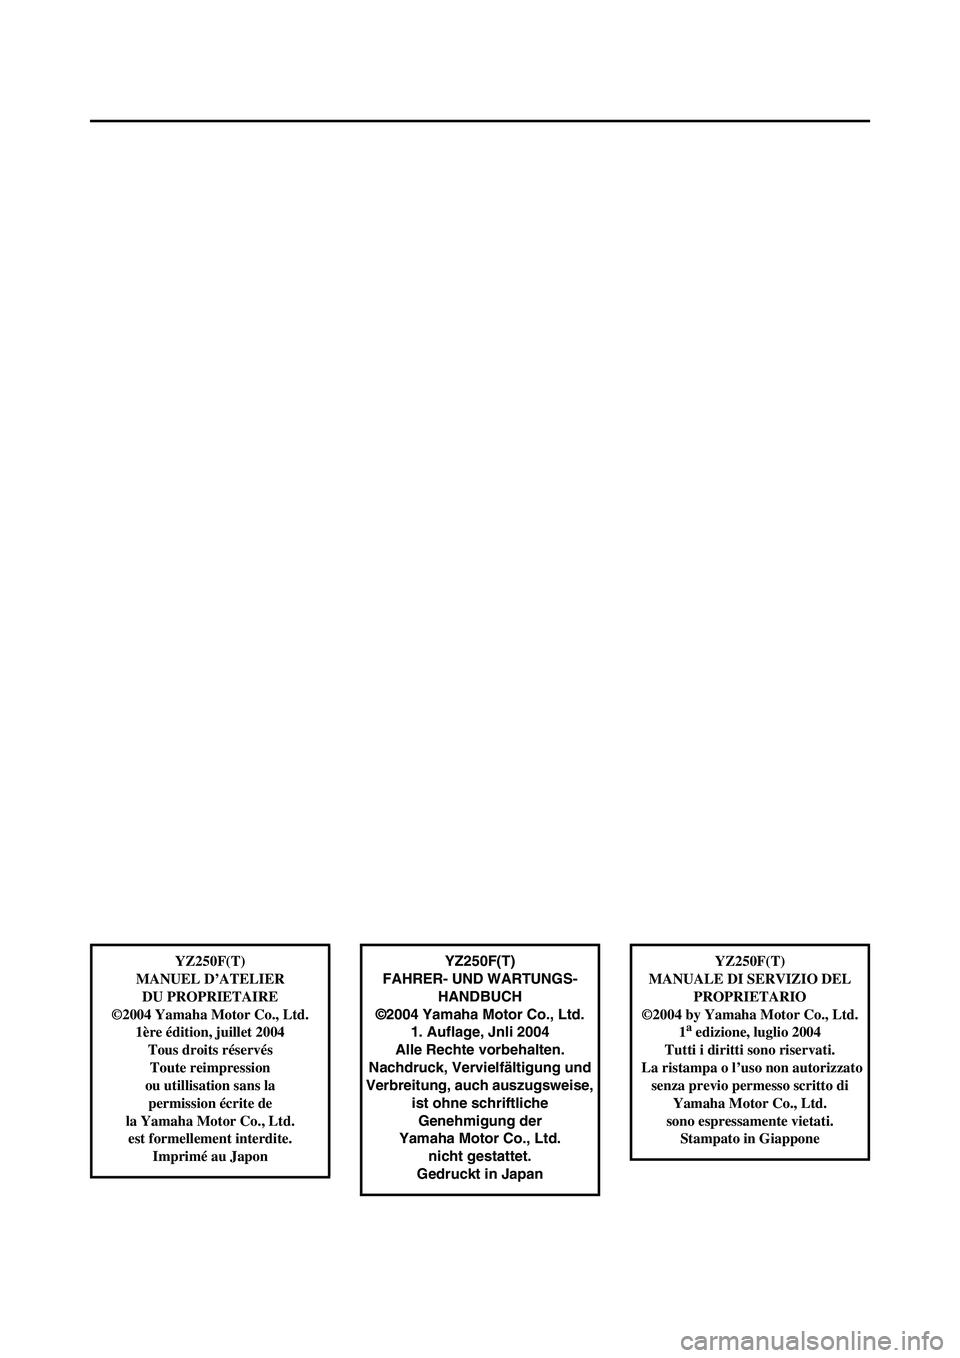 YAMAHA YZ250F 2005  Owners Manual YZ250F(T)
FAHRER- UND WARTUNGS-
HANDBUCH
©2004 Yamaha Motor Co., Ltd.
1. Auflage, Jnli 2004
Alle Rechte vorbehalten.
Nachdruck, Vervielfältigung und
Verbreitung, auch auszugsweise, 
ist ohne schrift